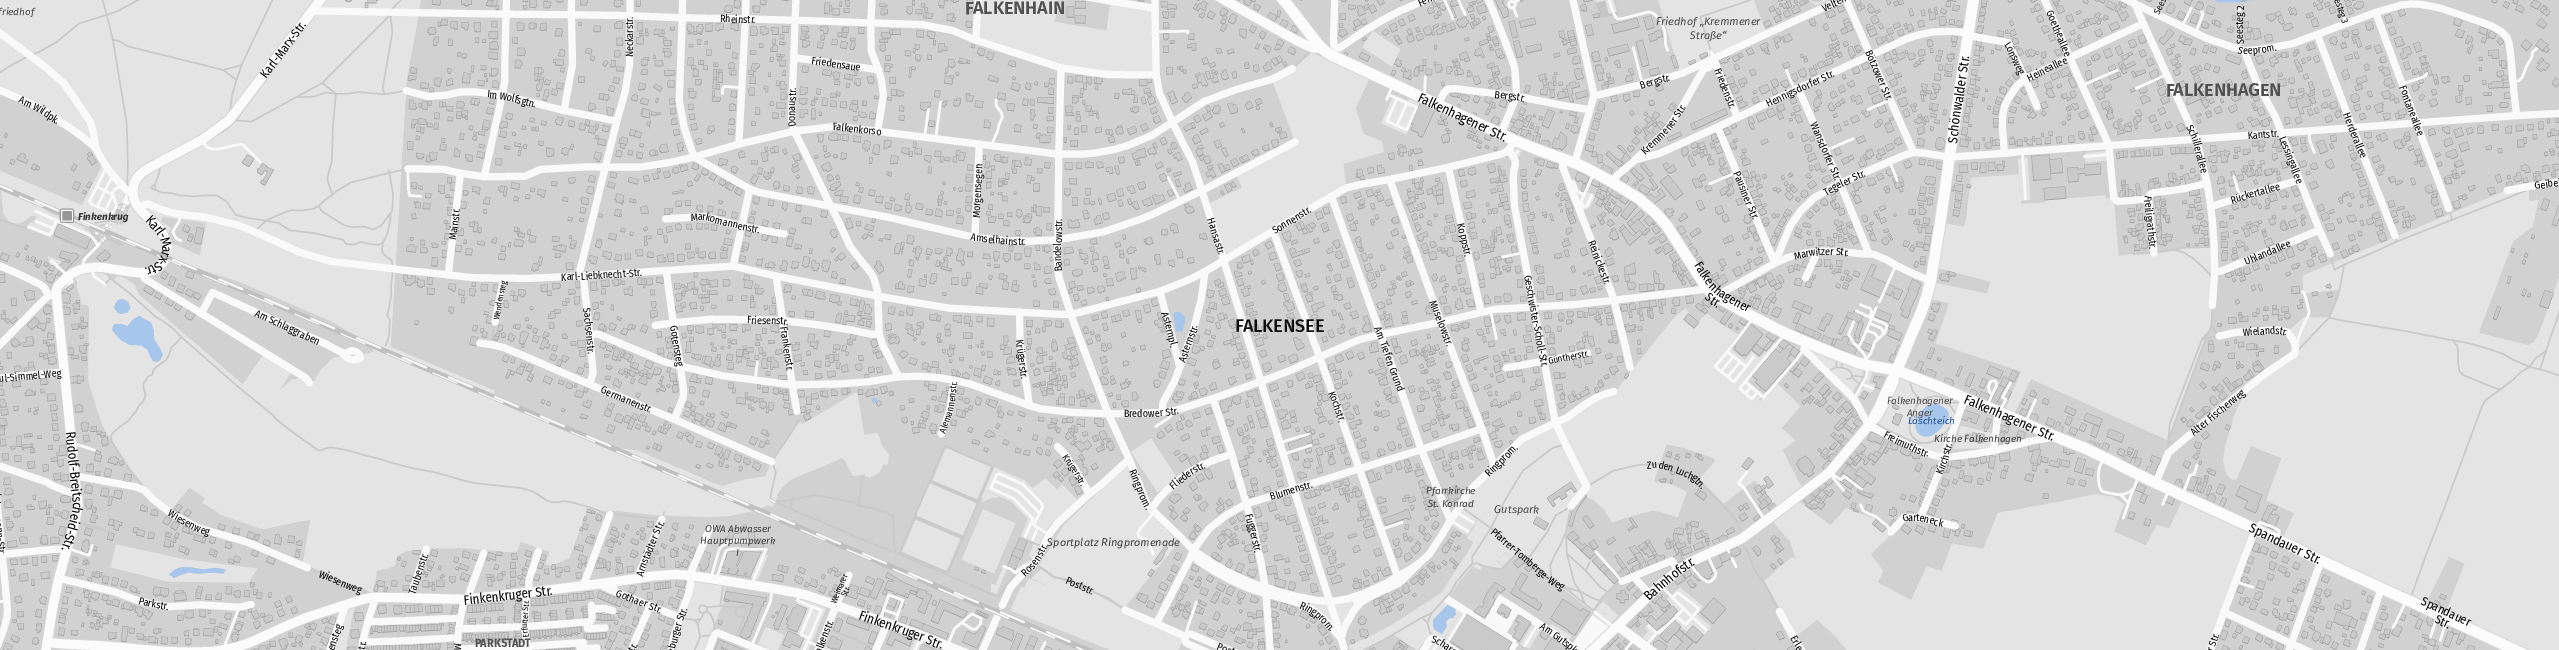 Stadtplan Falkensee zum Downloaden.